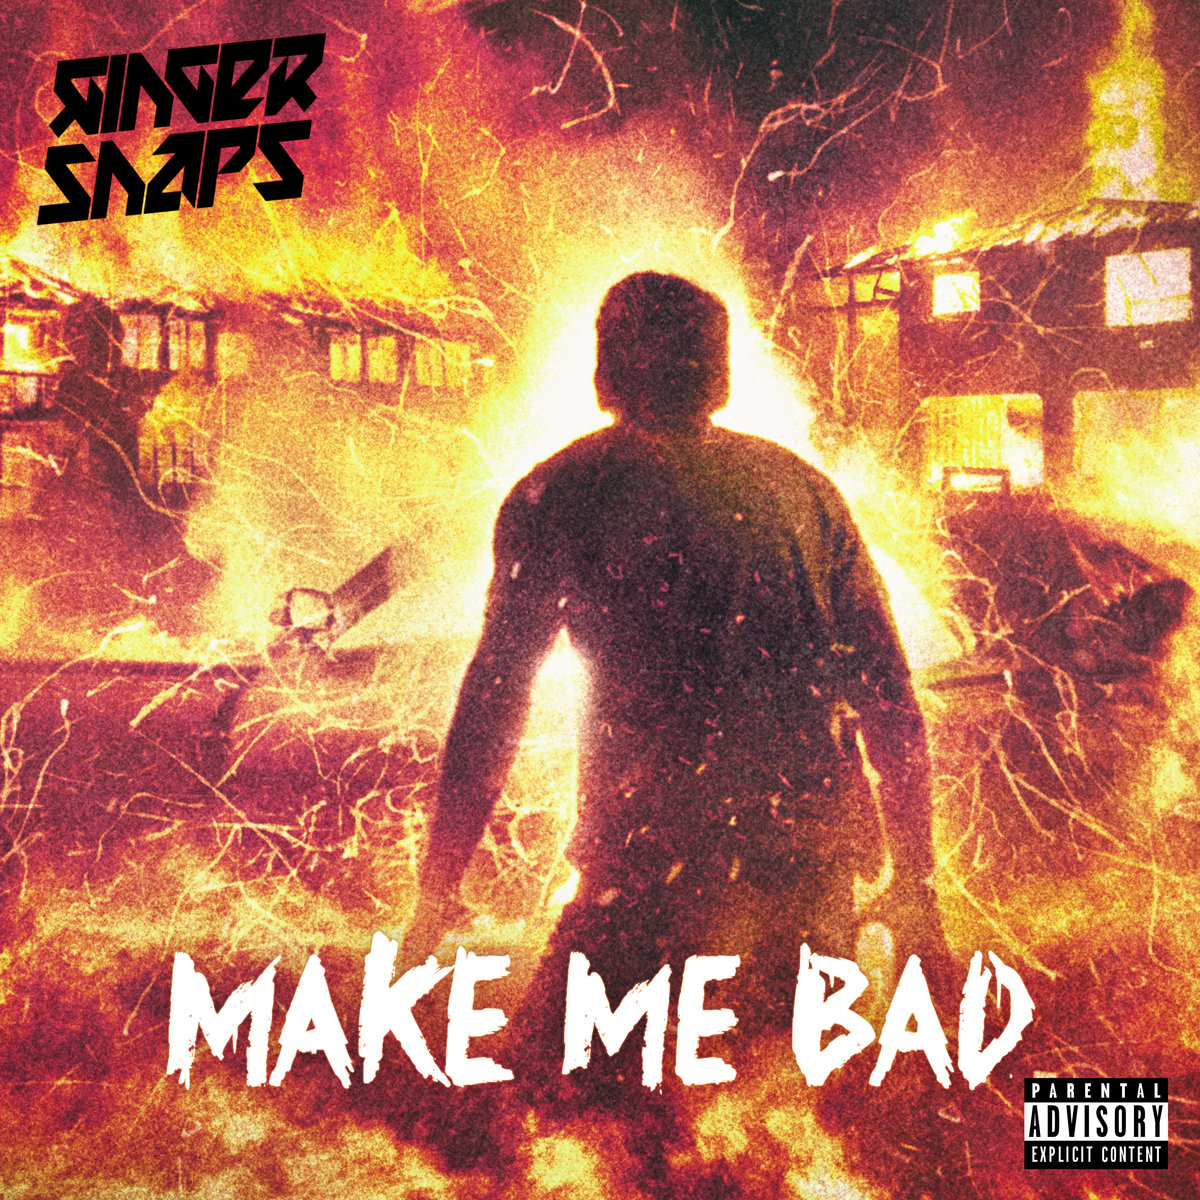 Ginger Snap5 – Make me bad (metal indus)